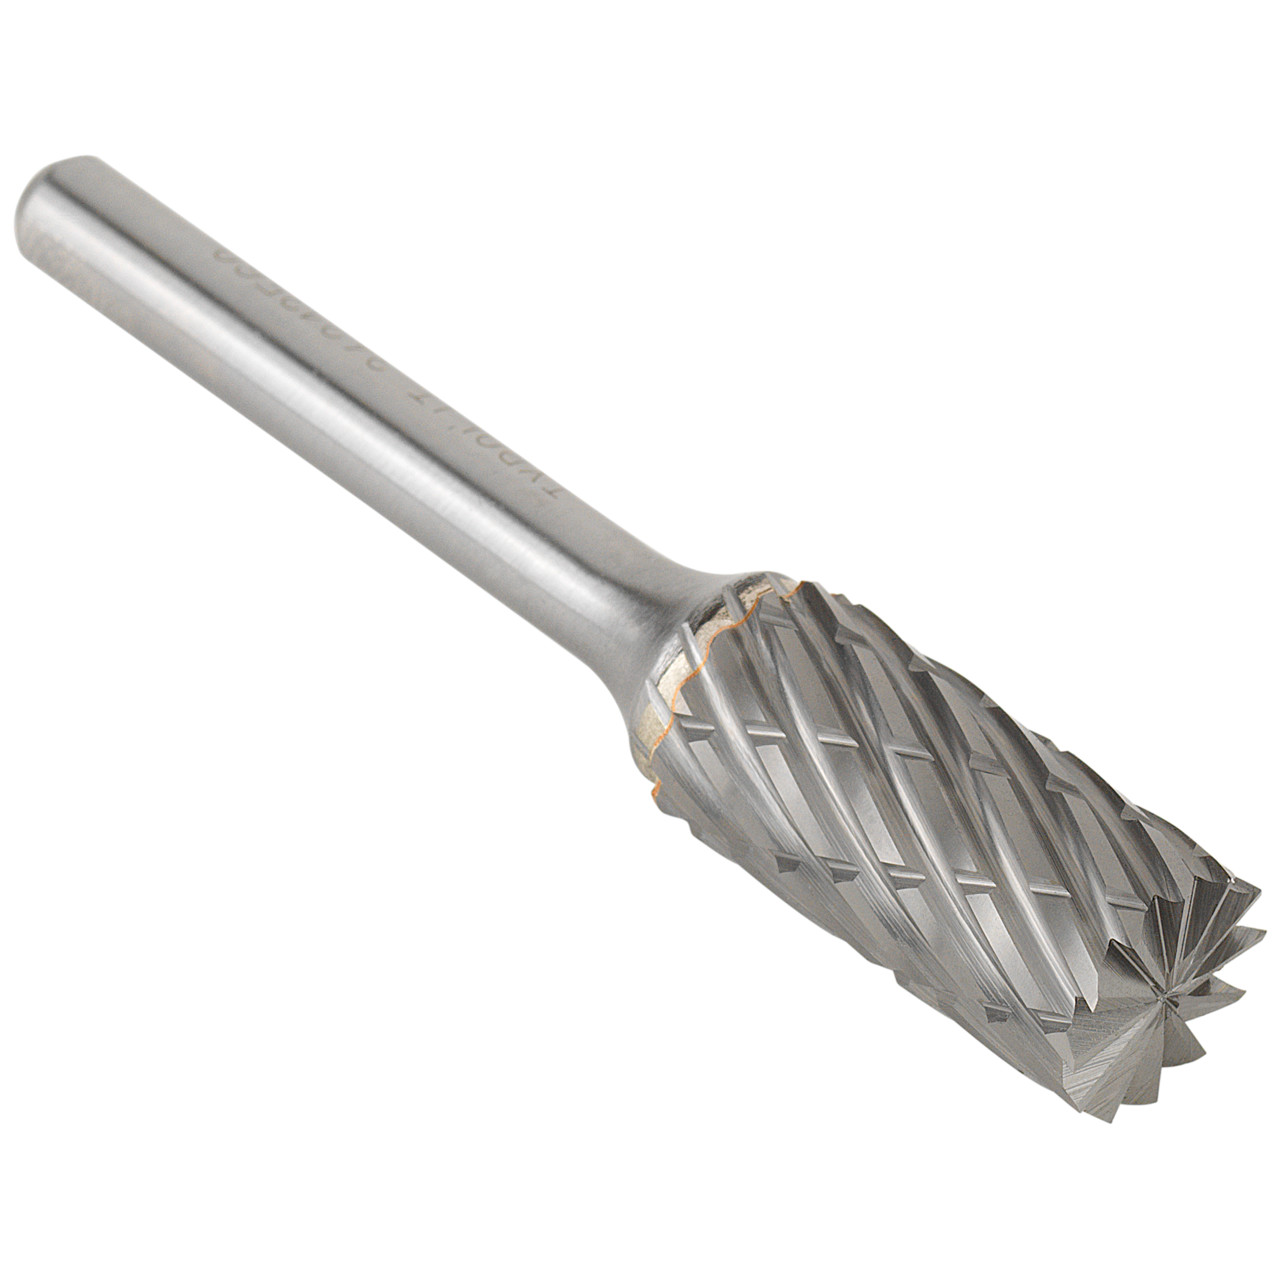 TYROLIT Hartmetallfräser DxT-SxL 6x18-6x50 Für Stahl, Form: 52ZYAS - Zylinder mit Stirnverzahnung, Art. 34213557